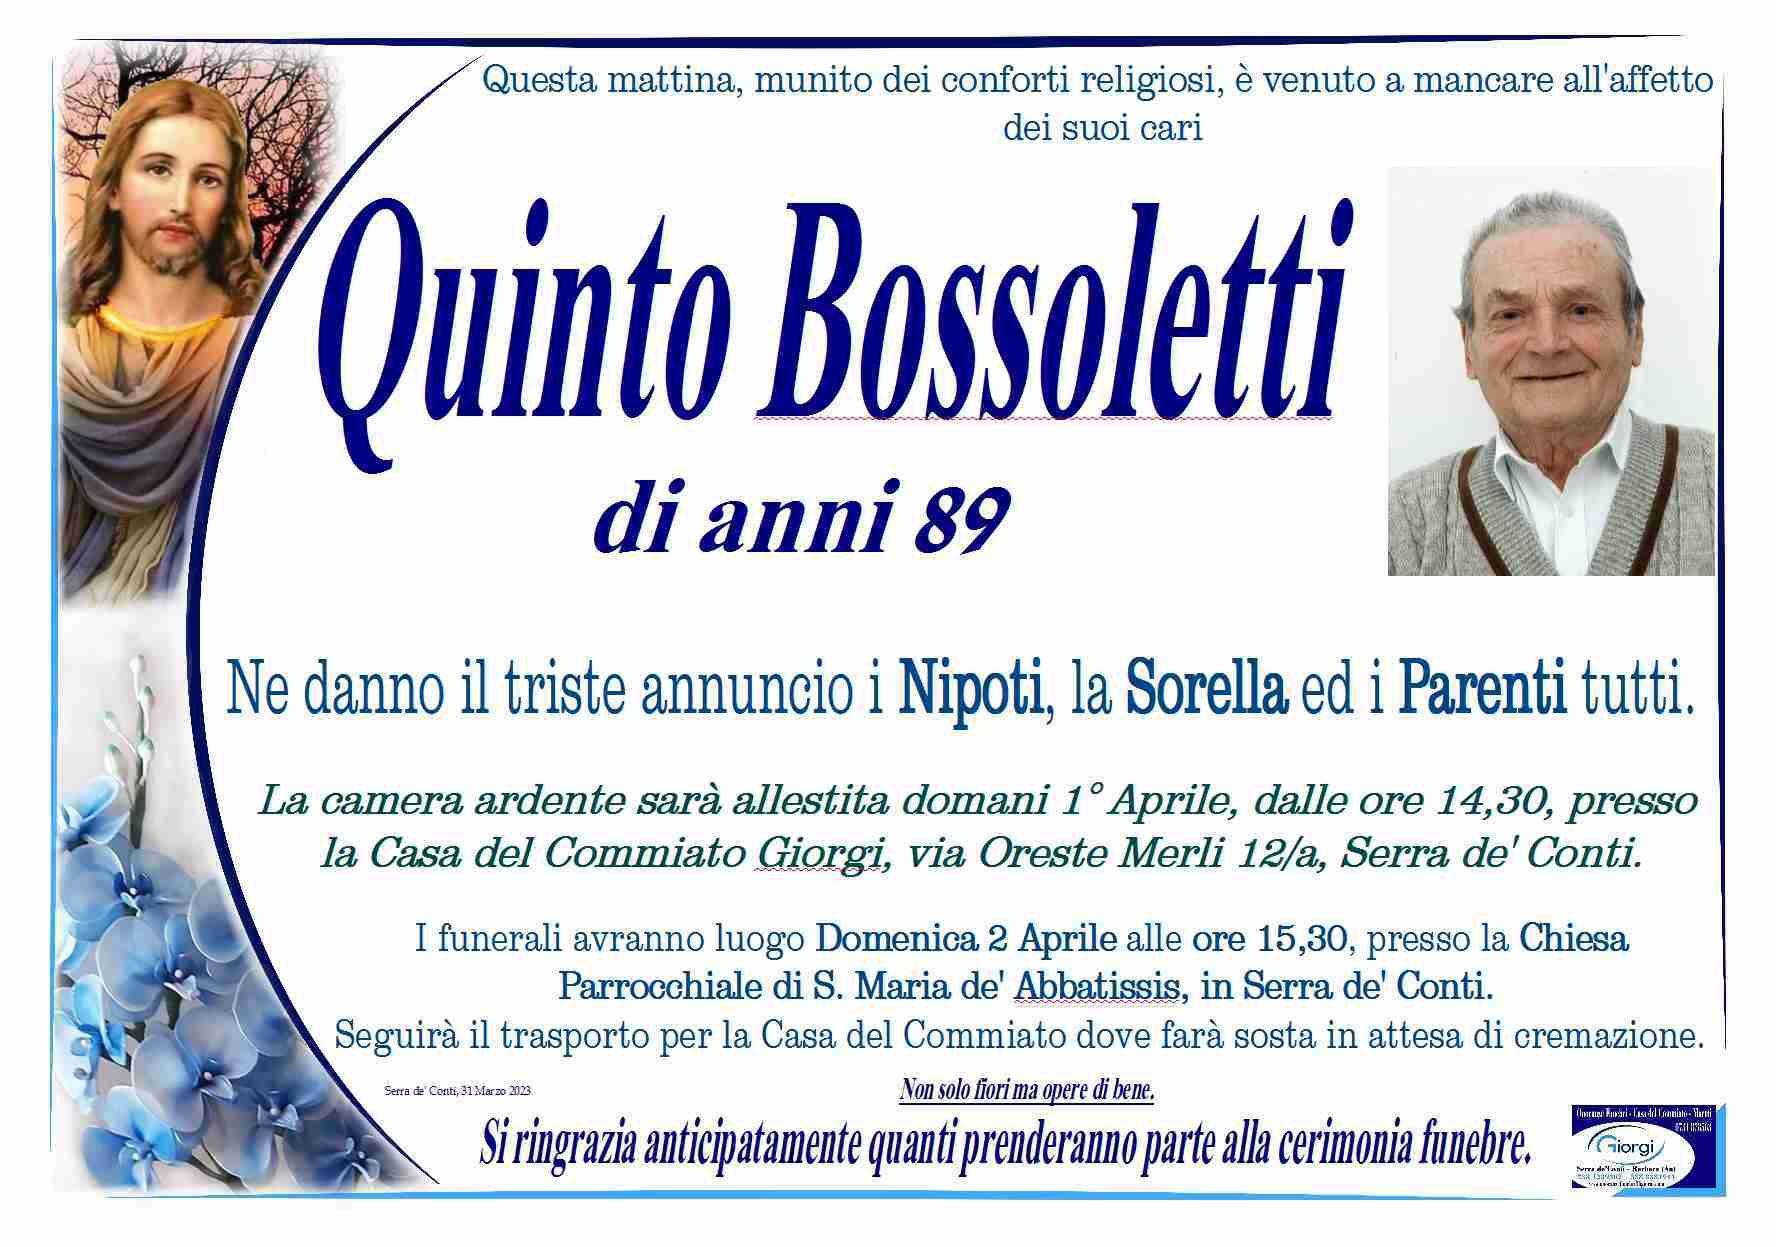 Quinto Bossoletti